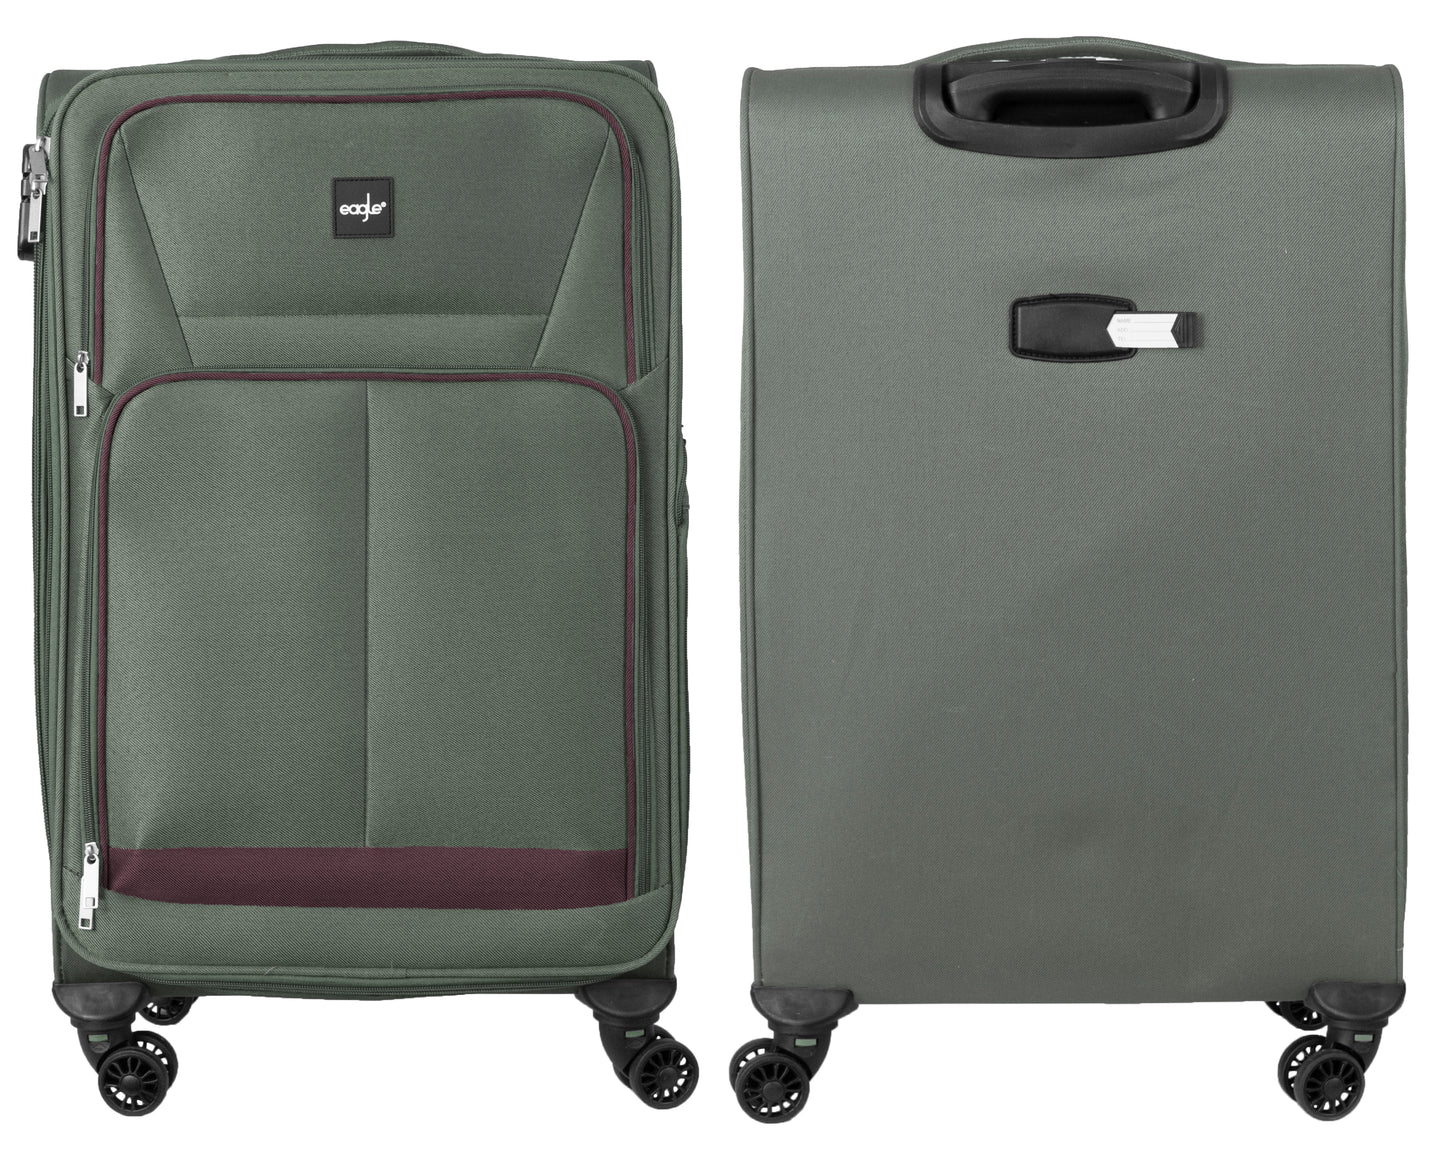 4 Wheels Soft Case Luggage Green